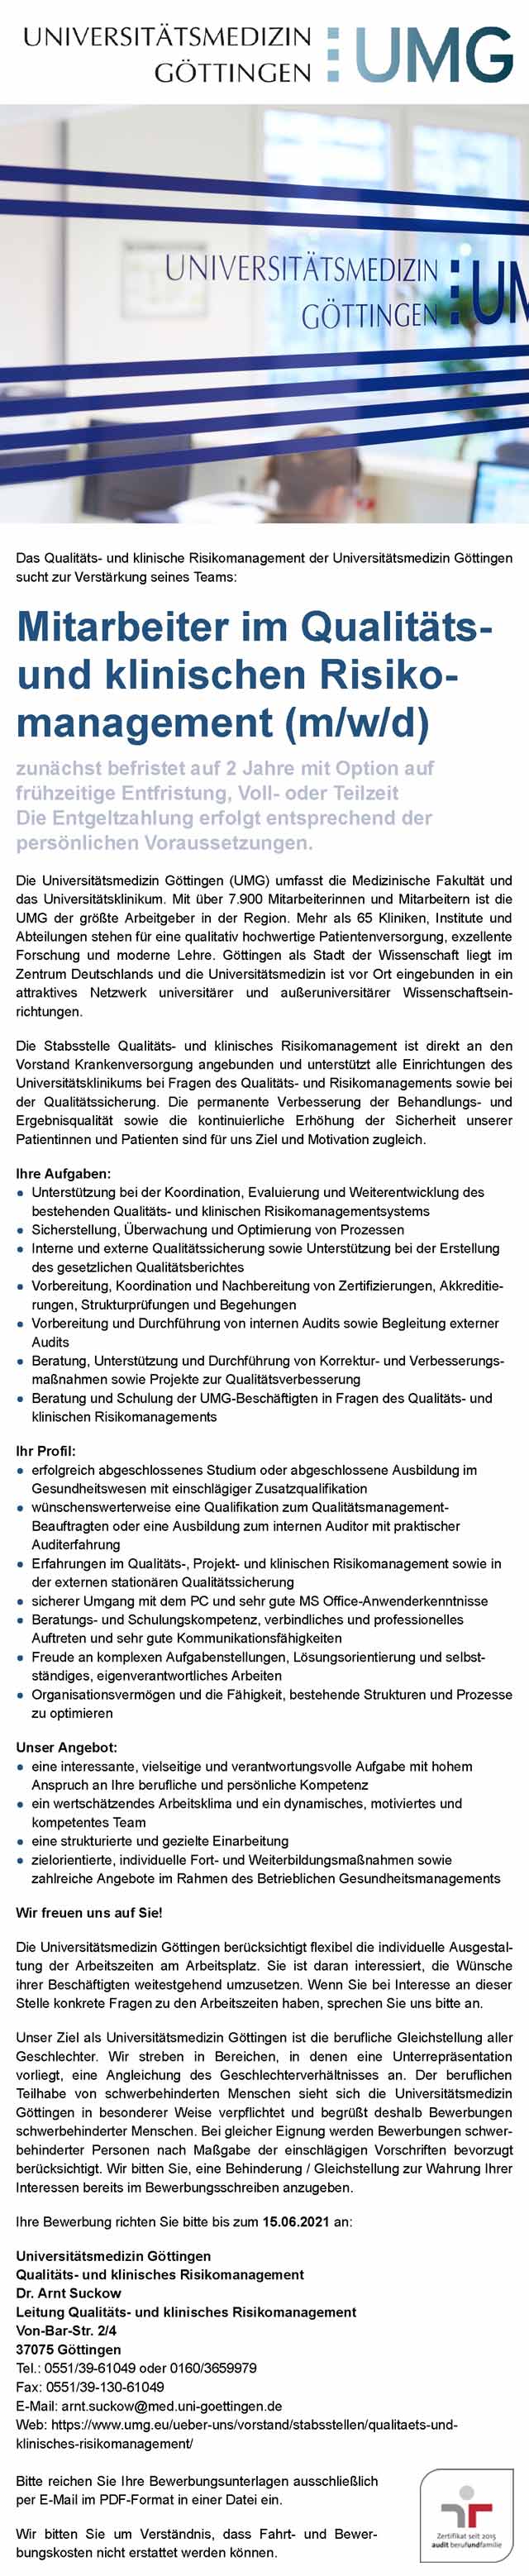 Universitätsmedizin Göttingen: Mitarbeiter Qualitätsmanagement u. klinisches Risikomanagement (m/w/d)